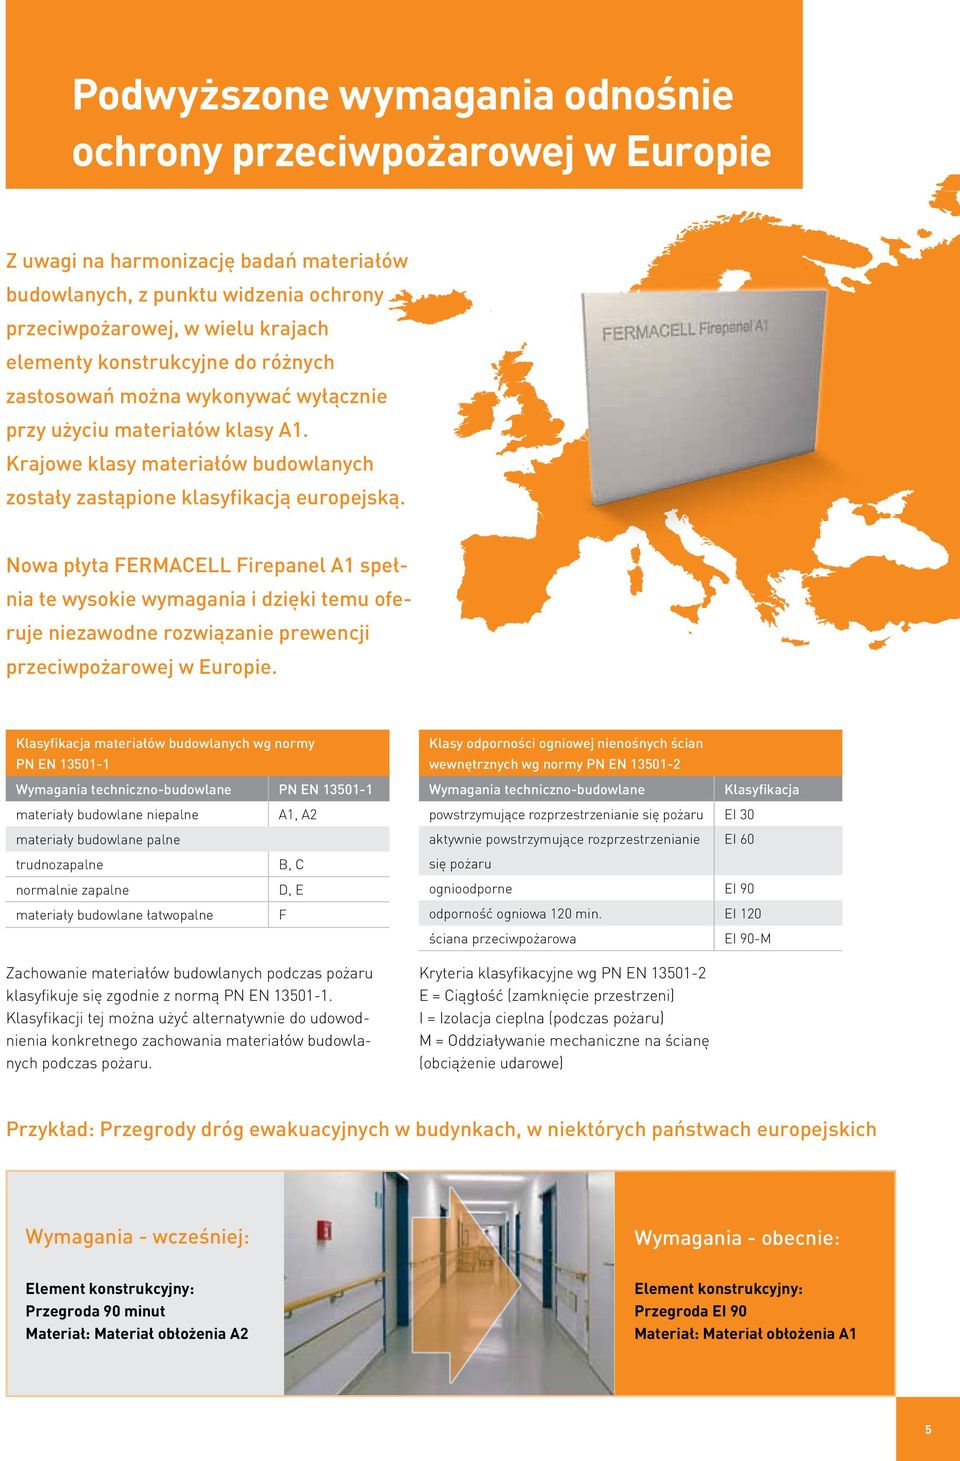 Nowa płyta Firepanel A1 spełnia te wysokie wymagania i dzięki temu oferuje niezawodne rozwiązanie prewencji przeciwpożarowej w Europie.